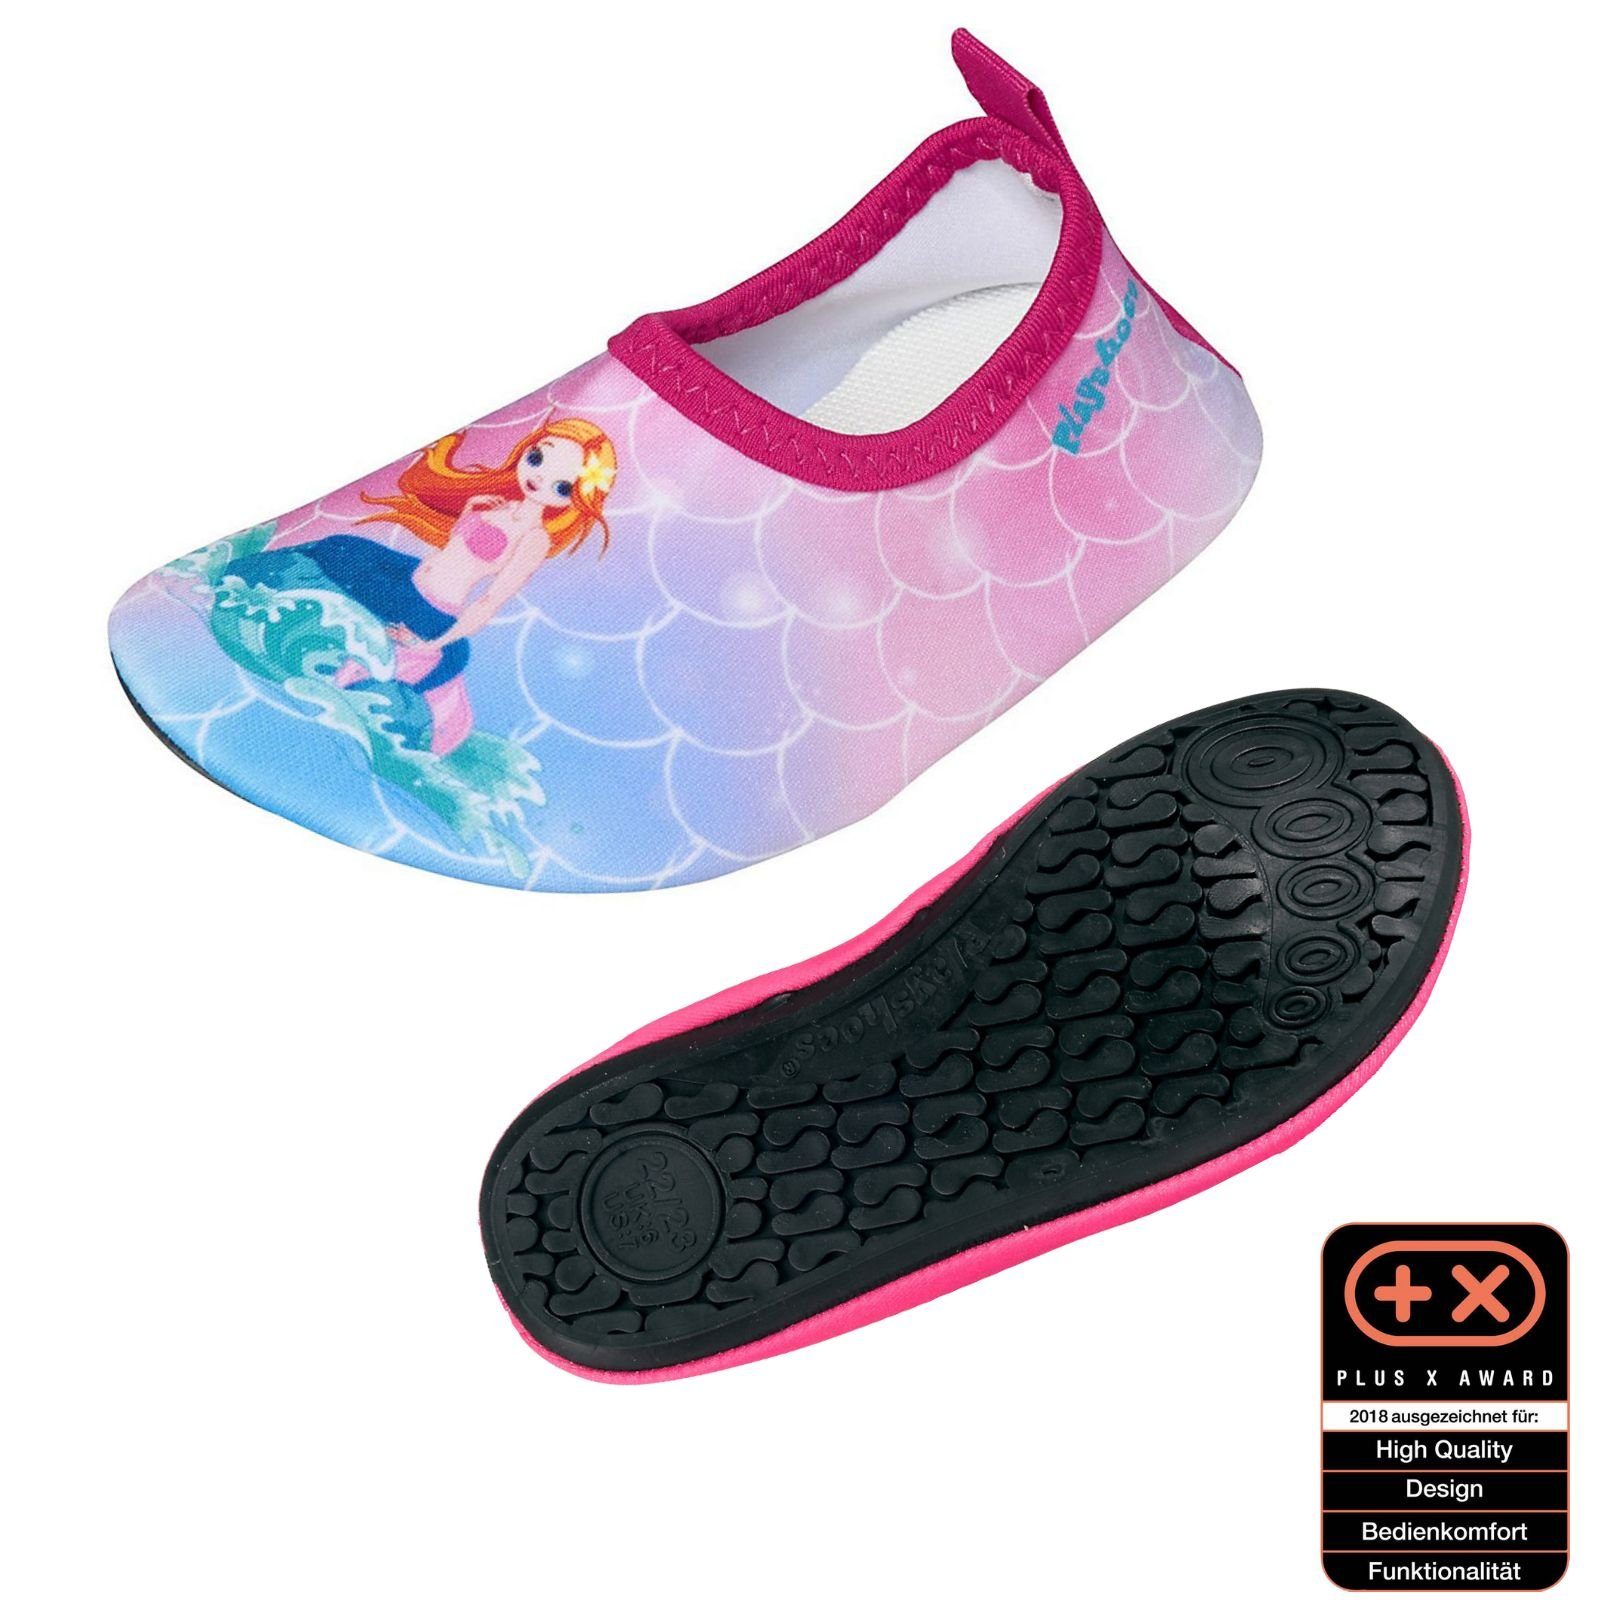 Playshoes Badeschuhe Wasserschuhe Schwimmschuhe, Motiv Badeschuh flexible Passform, Barfuß-Schuh mit rutschhemmender Sohle Meerjungfrau rosa